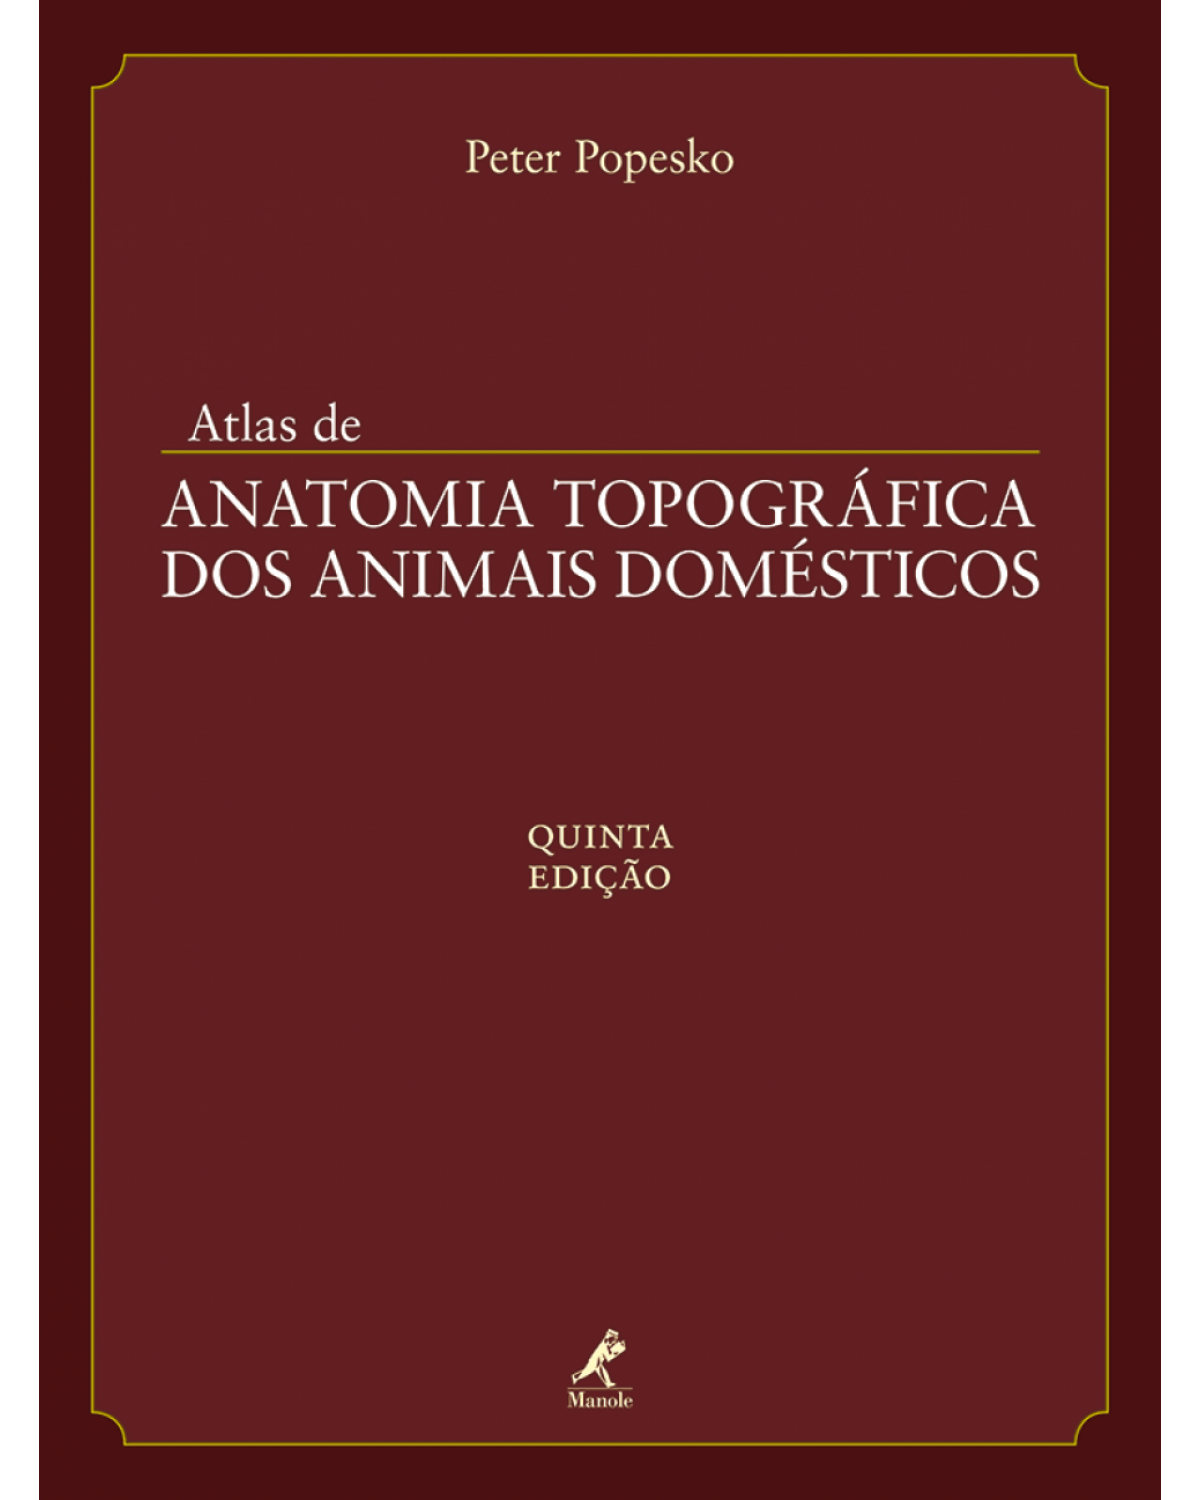 Atlas de anatomia topográfica dos animais domésticos - 5ª Edição | 2012